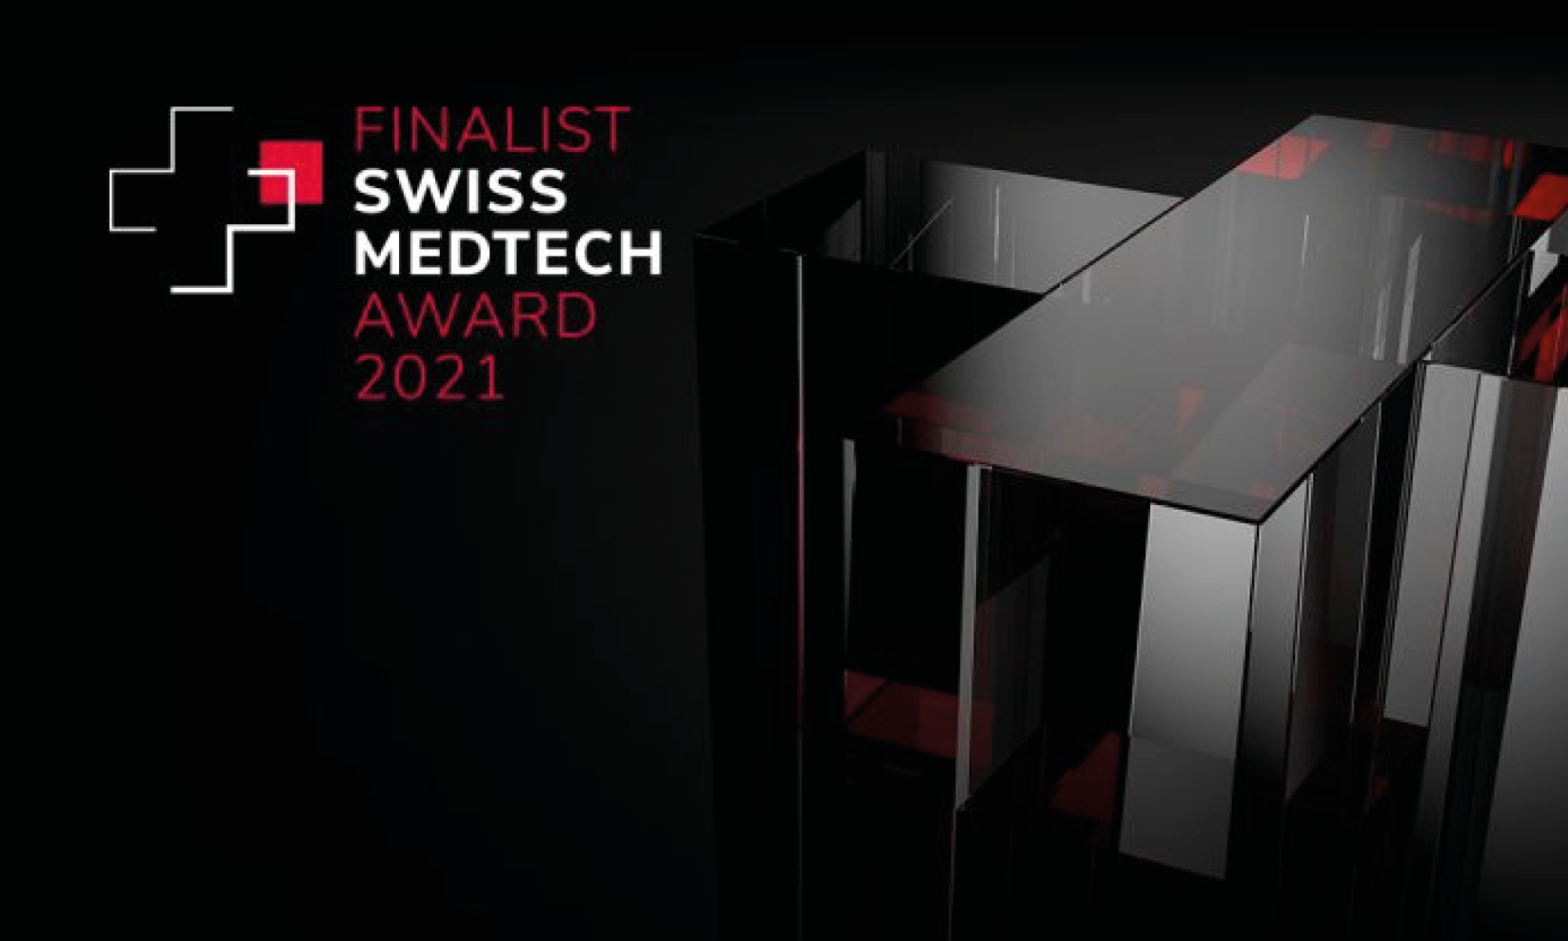 Finalist Swiss Medtech Award